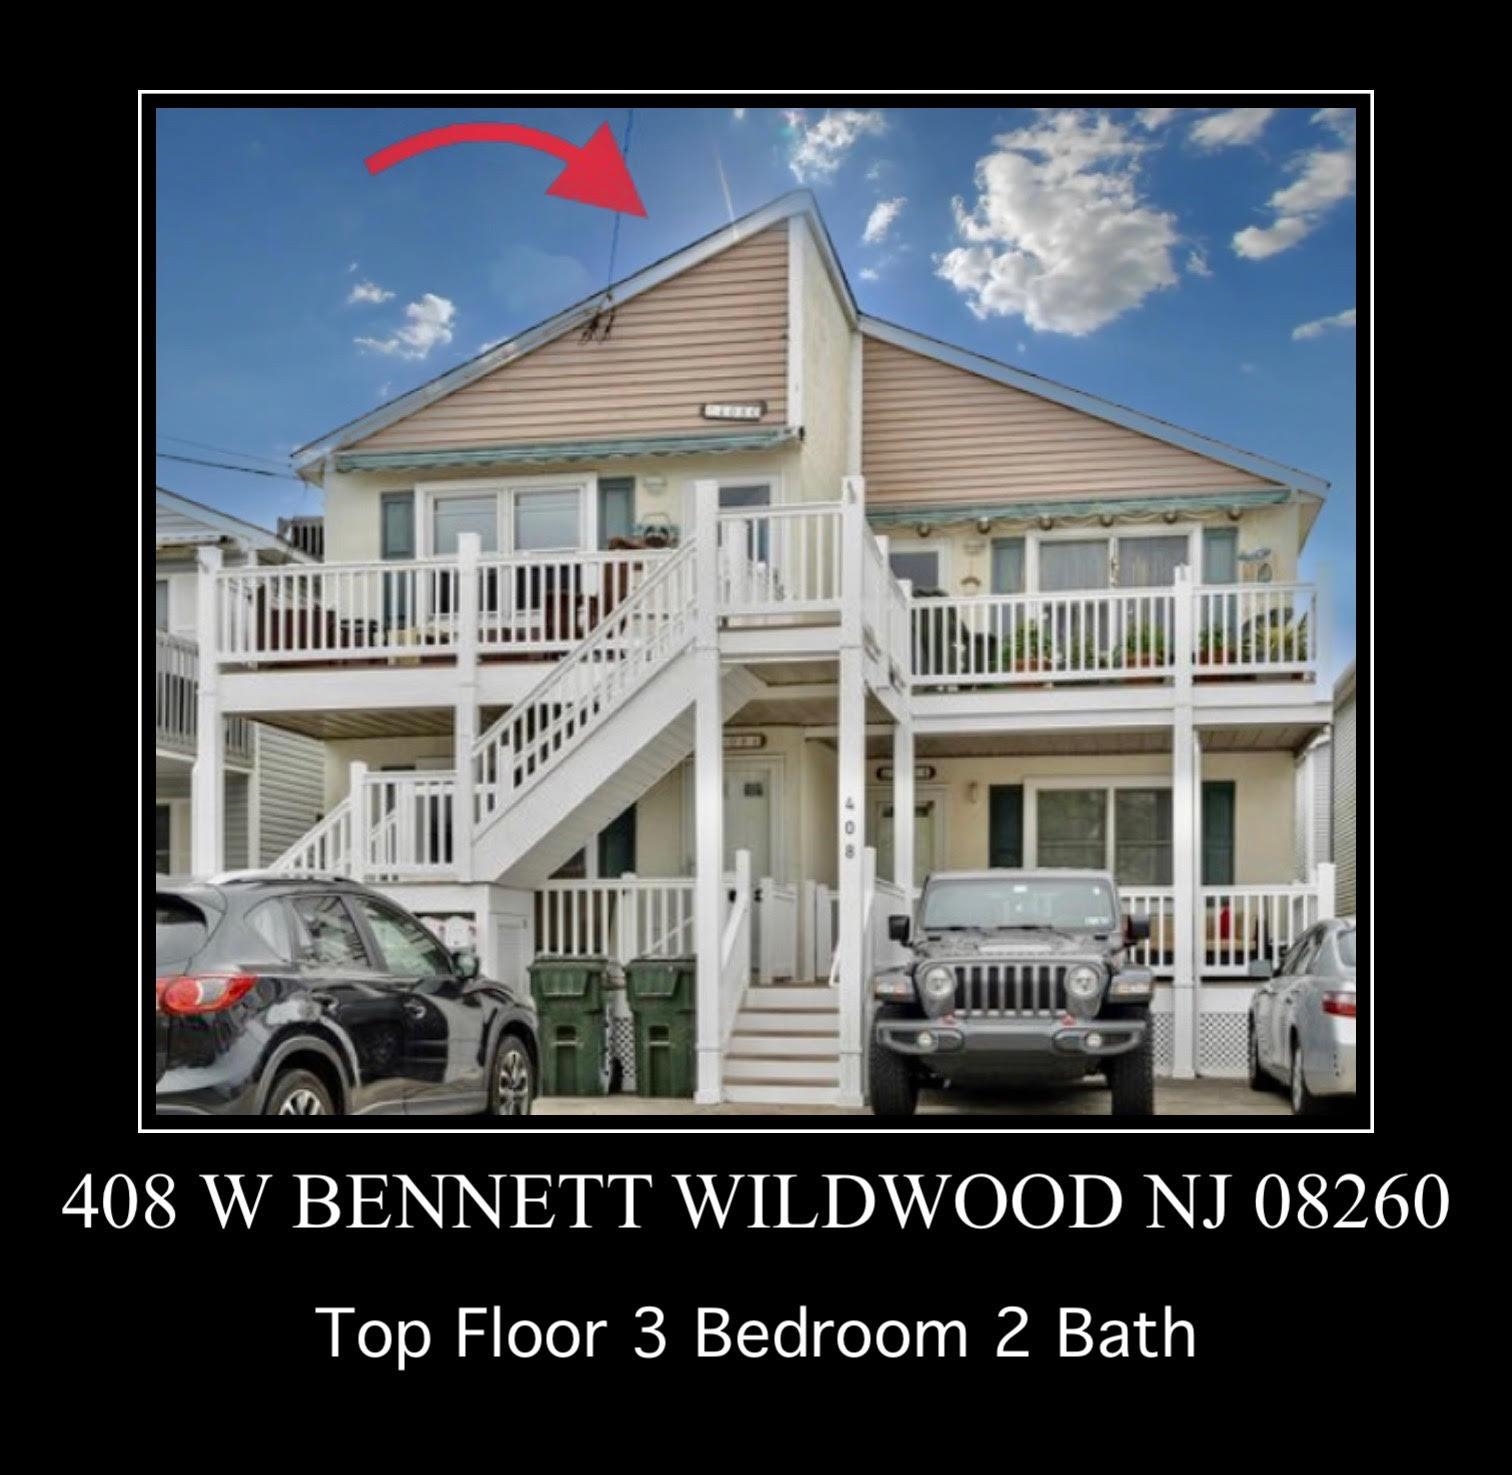 408 W Bennett Avenue - Wildwood